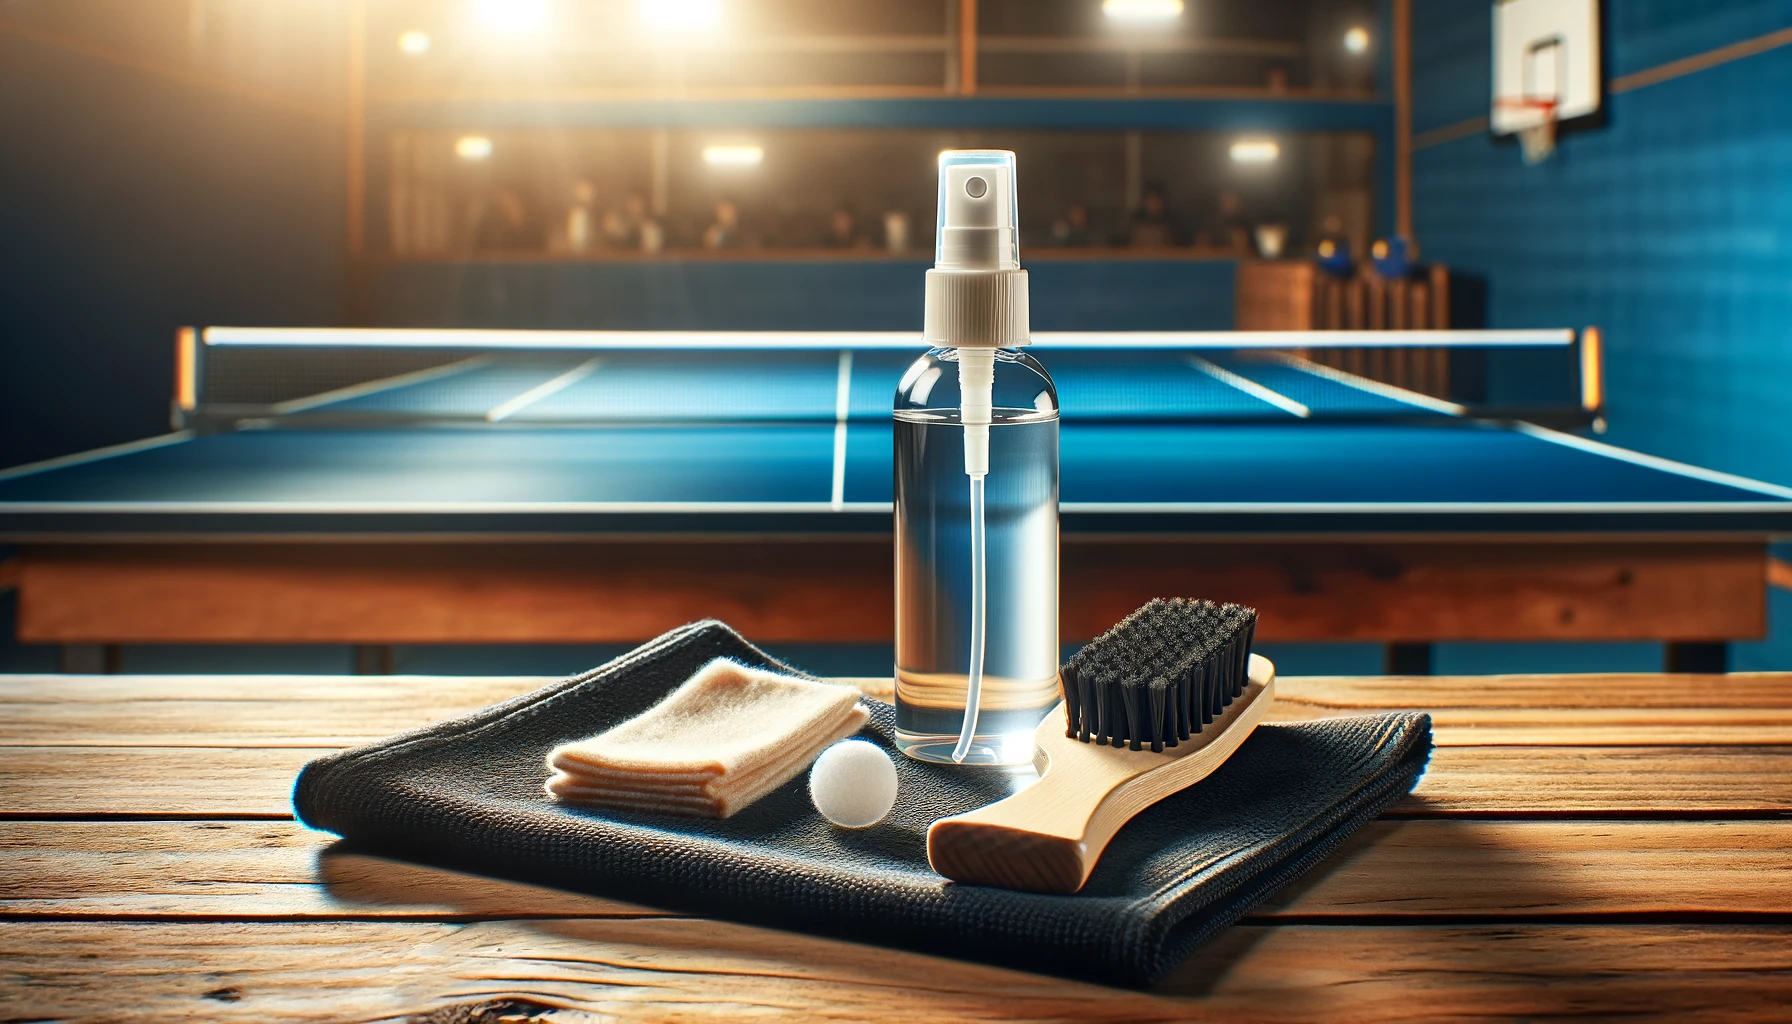 Foto eines speziellen Reinigungssets für Tischtennisschläger, das ordentlich auf einem Holztisch angeordnet ist.